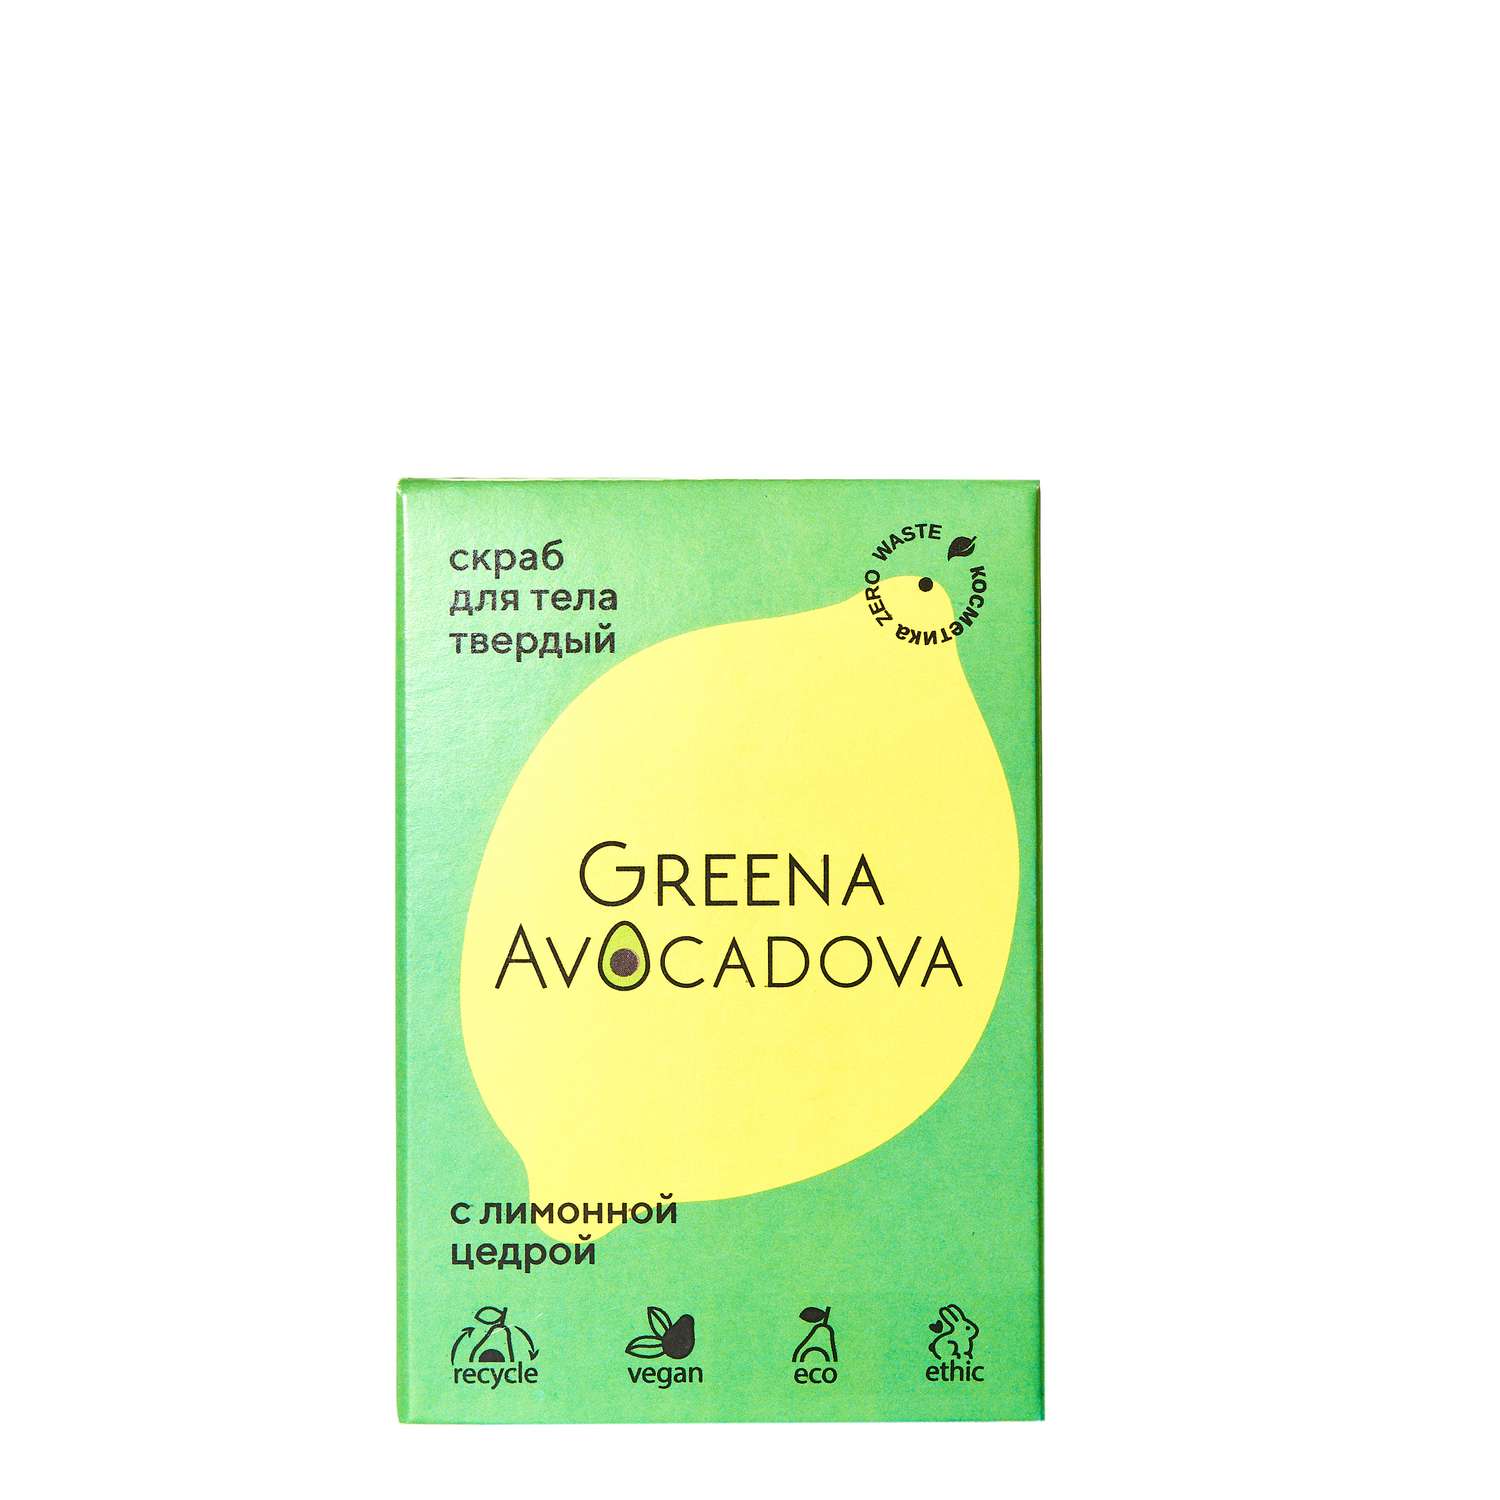 Скраб для тела Greena Avocadova с лимонной цедрой - фото 1